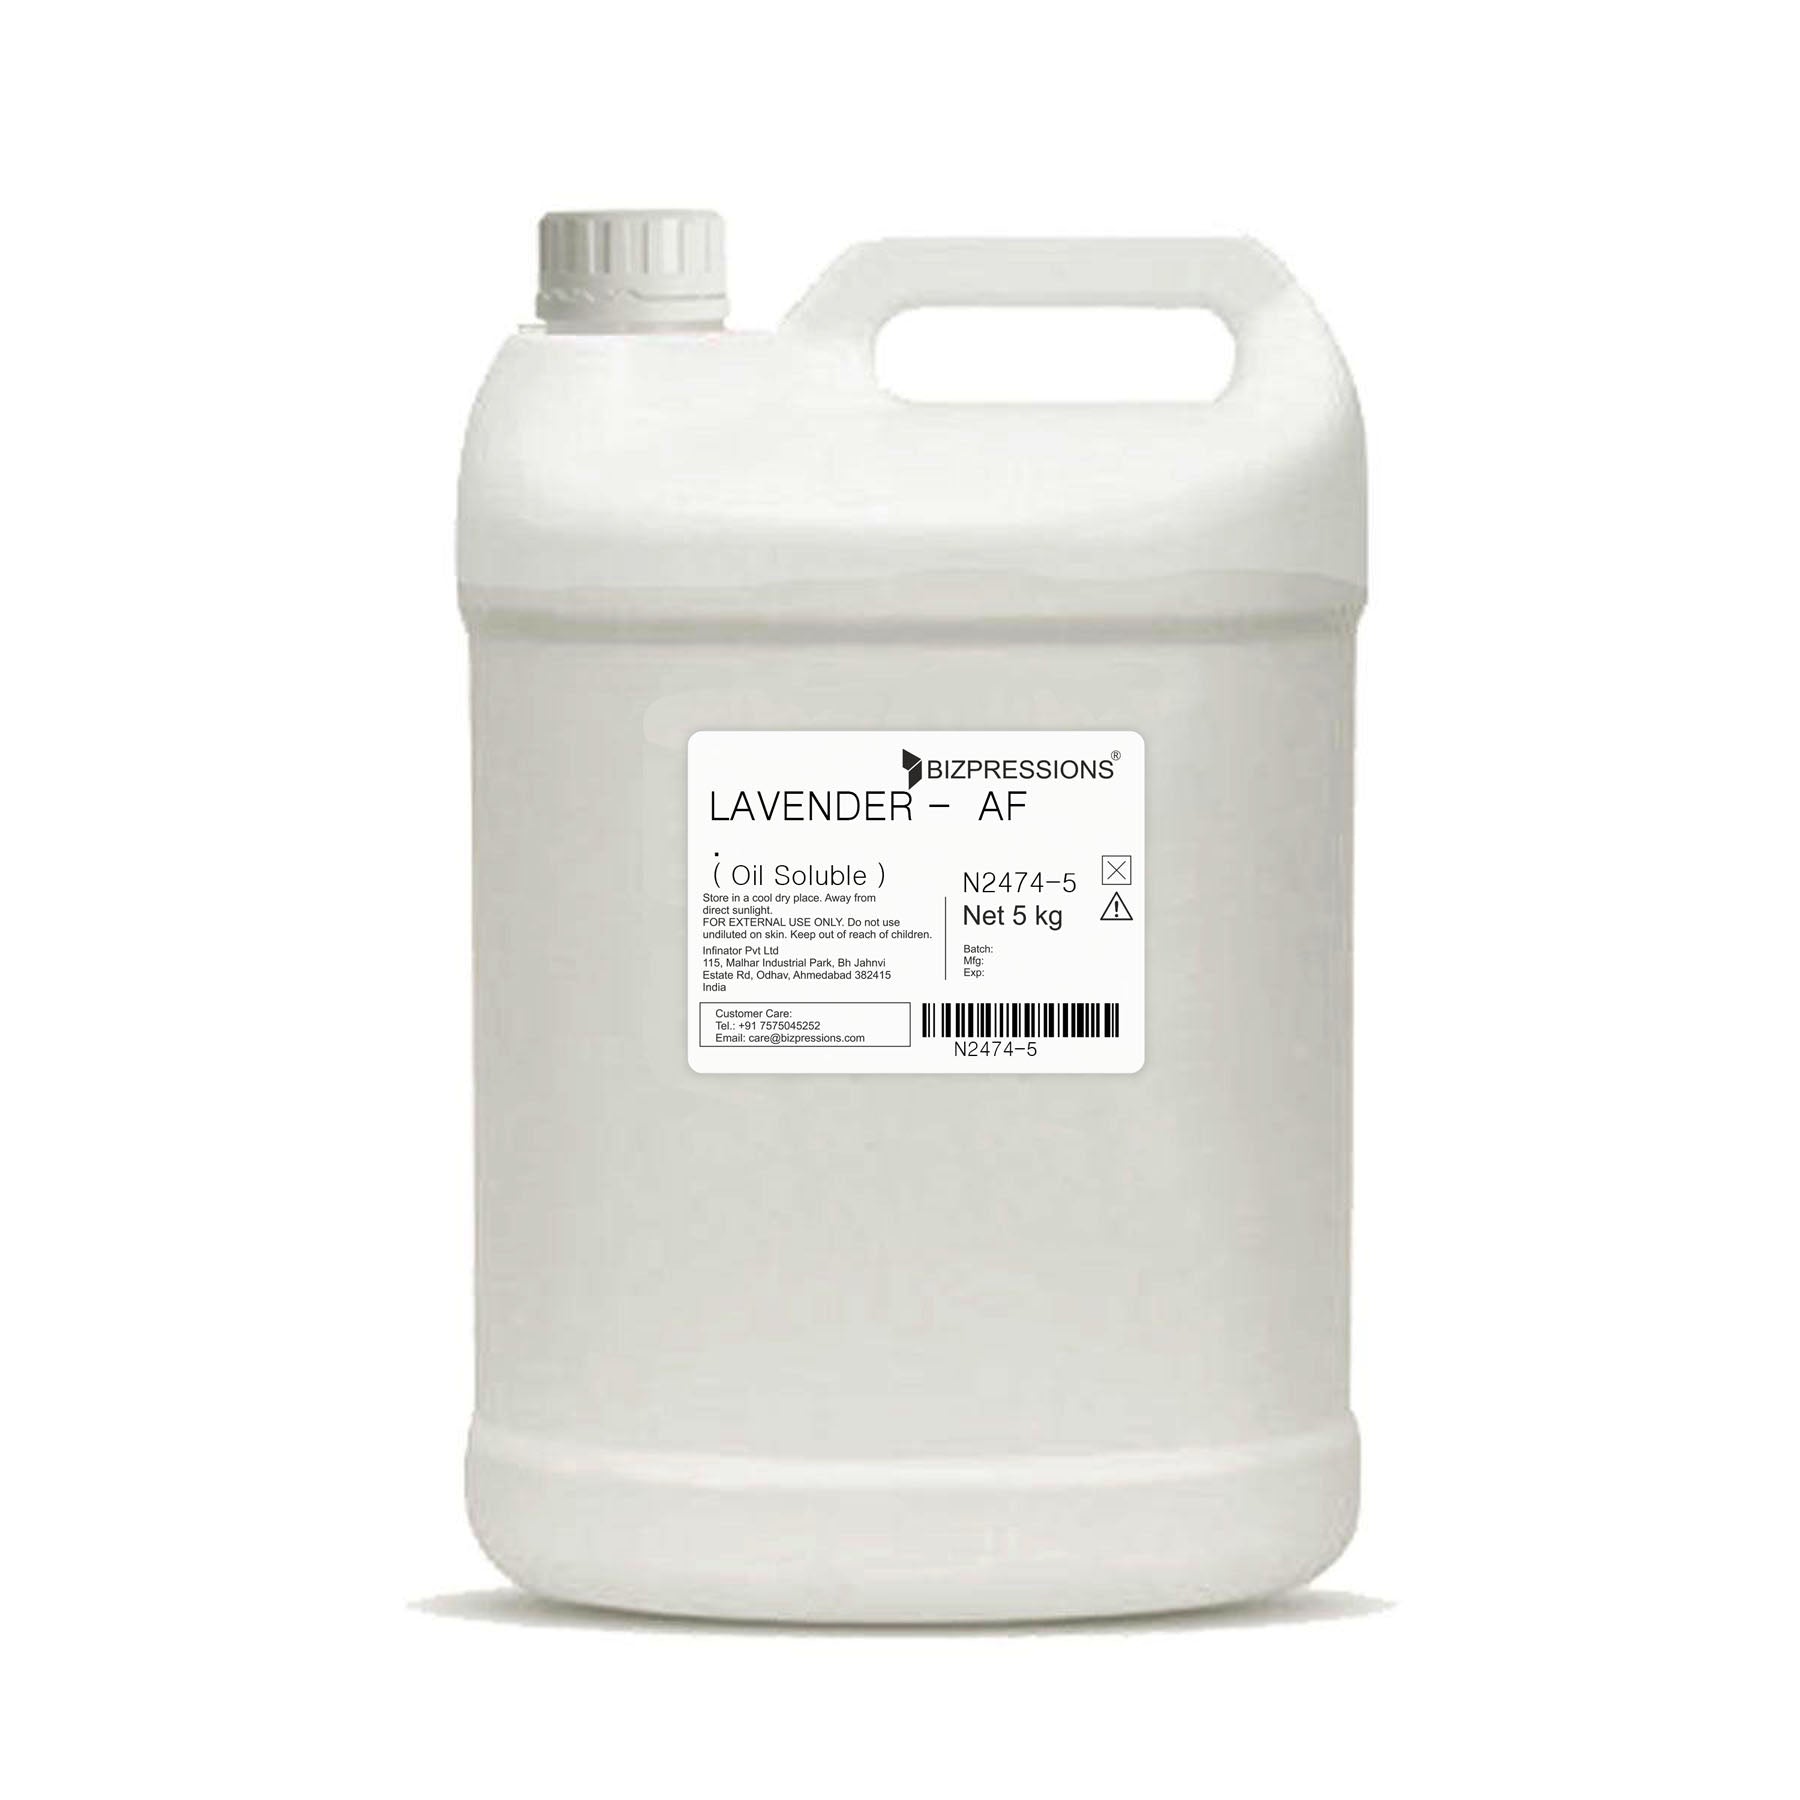 LAVENDER - AF - Fragrance ( Oil Soluble ) - 5 kg